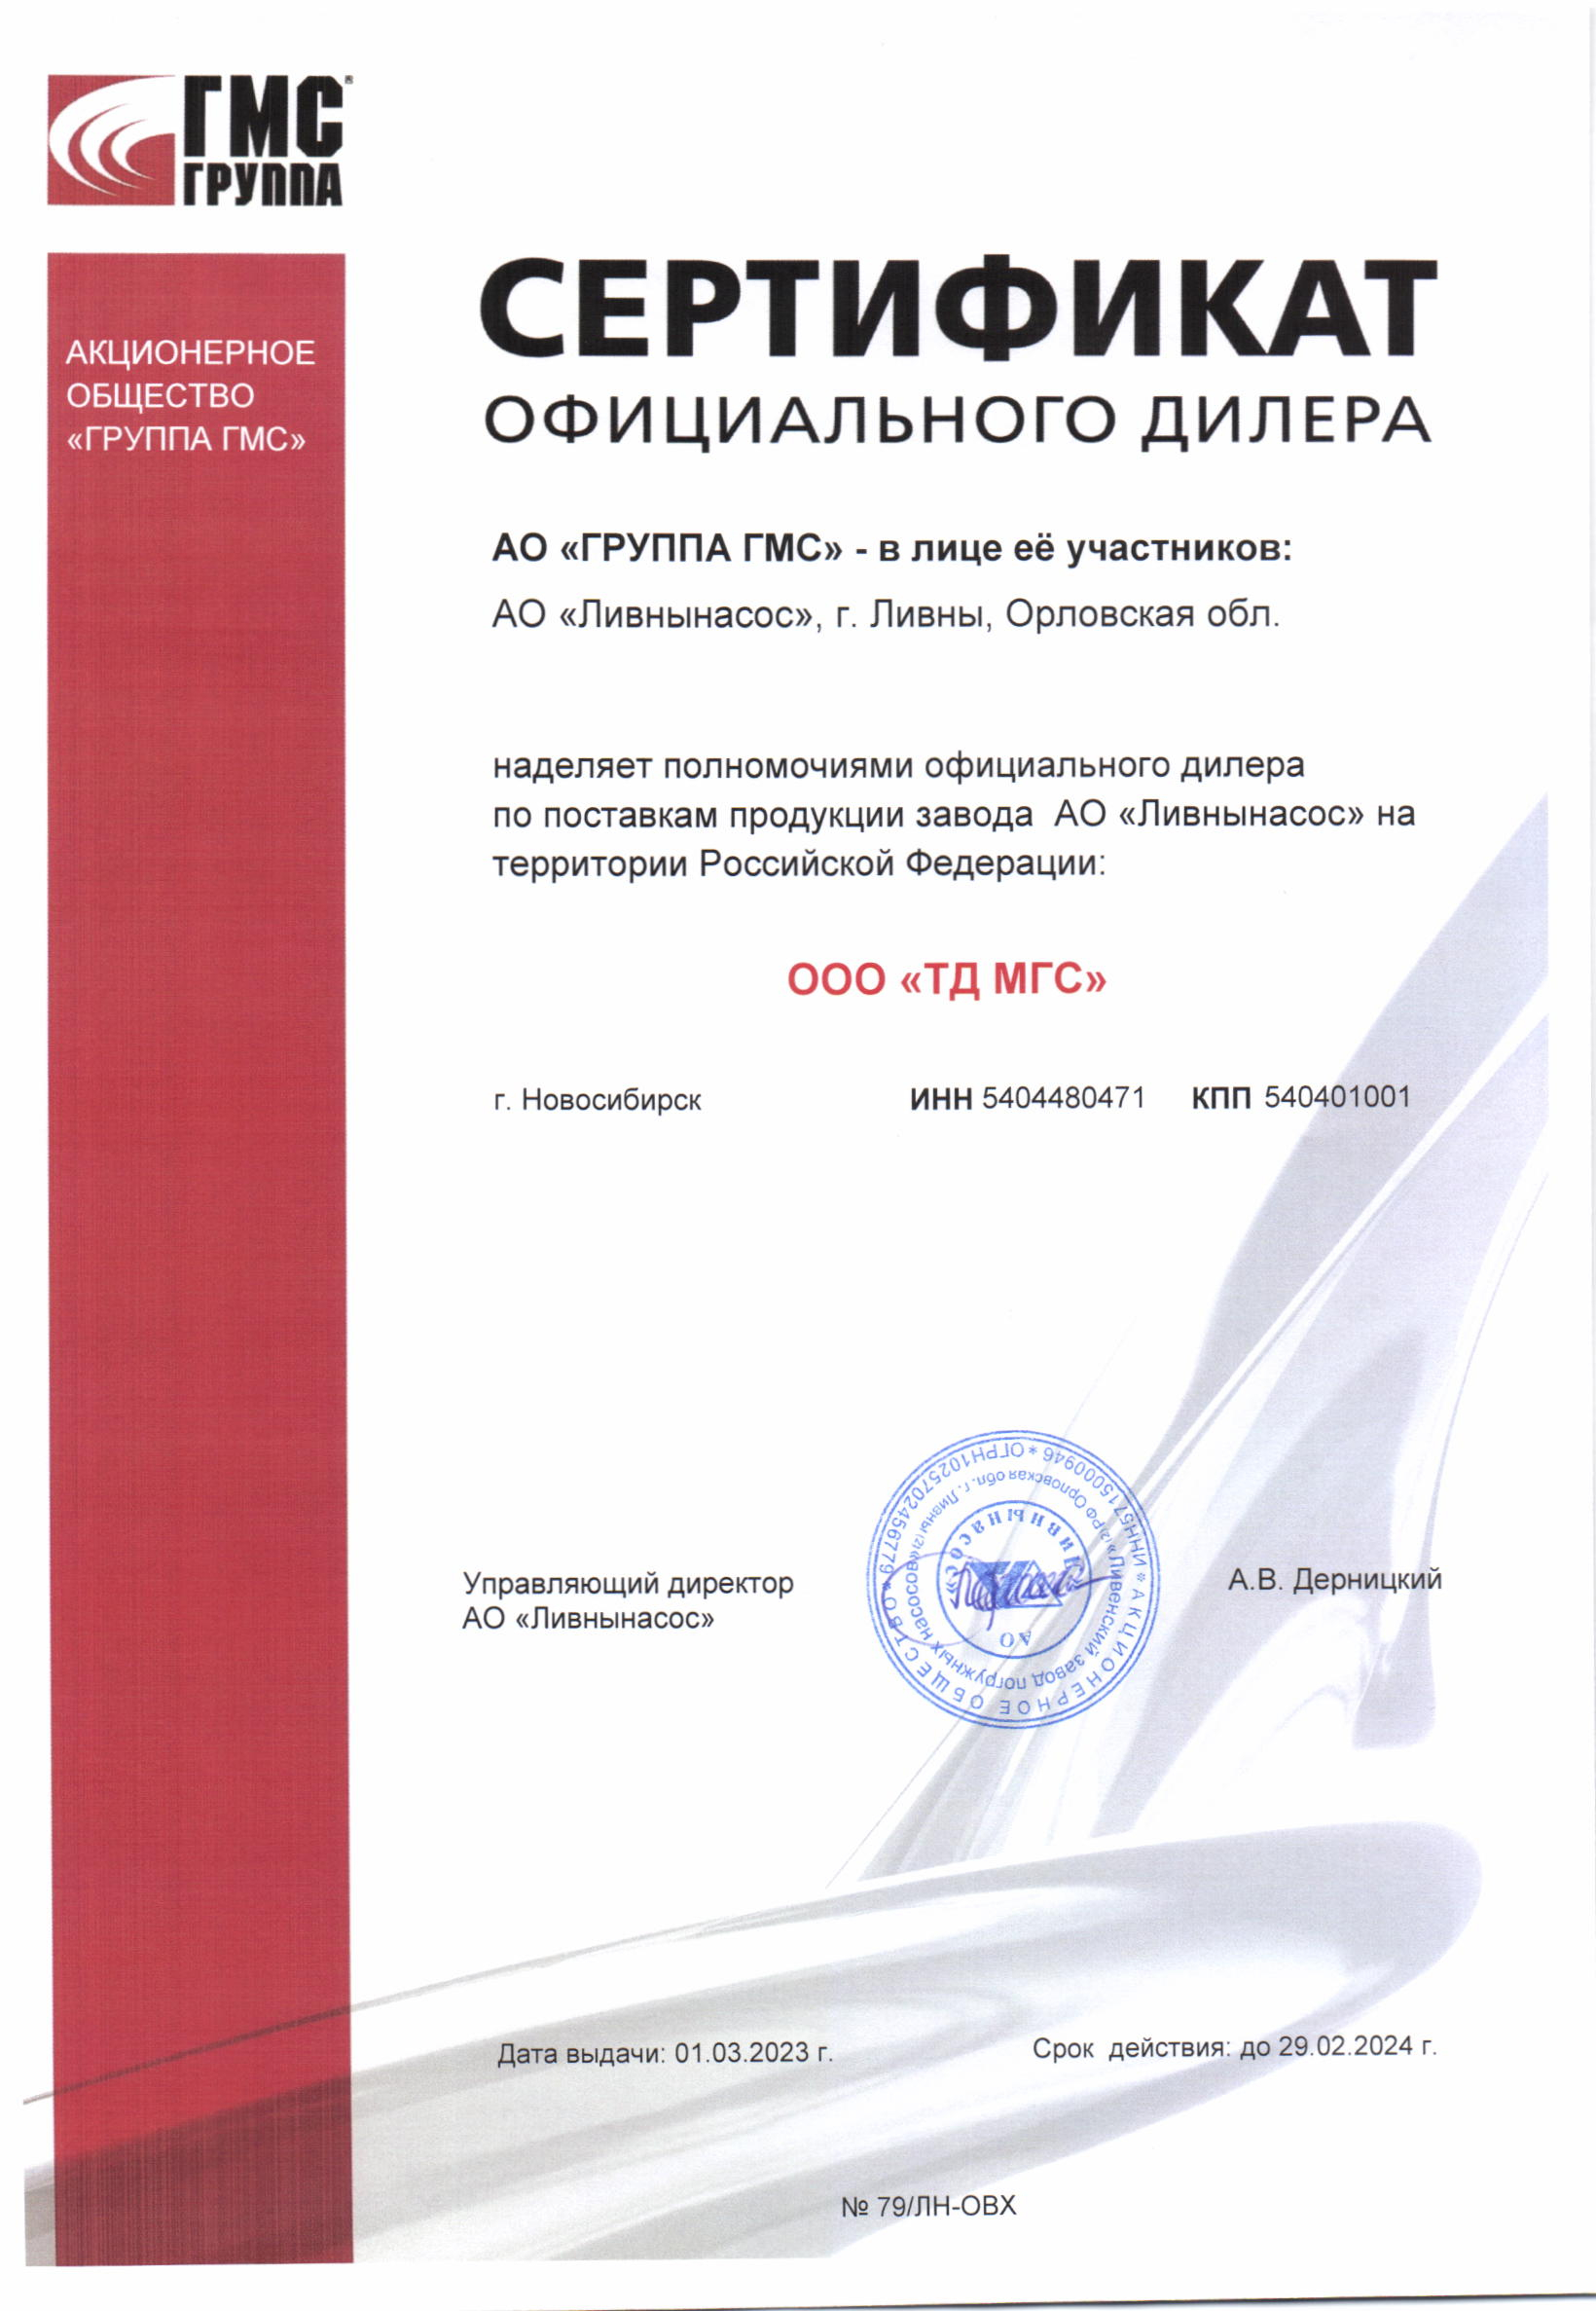 Сертификат дилера|Ливнынасос